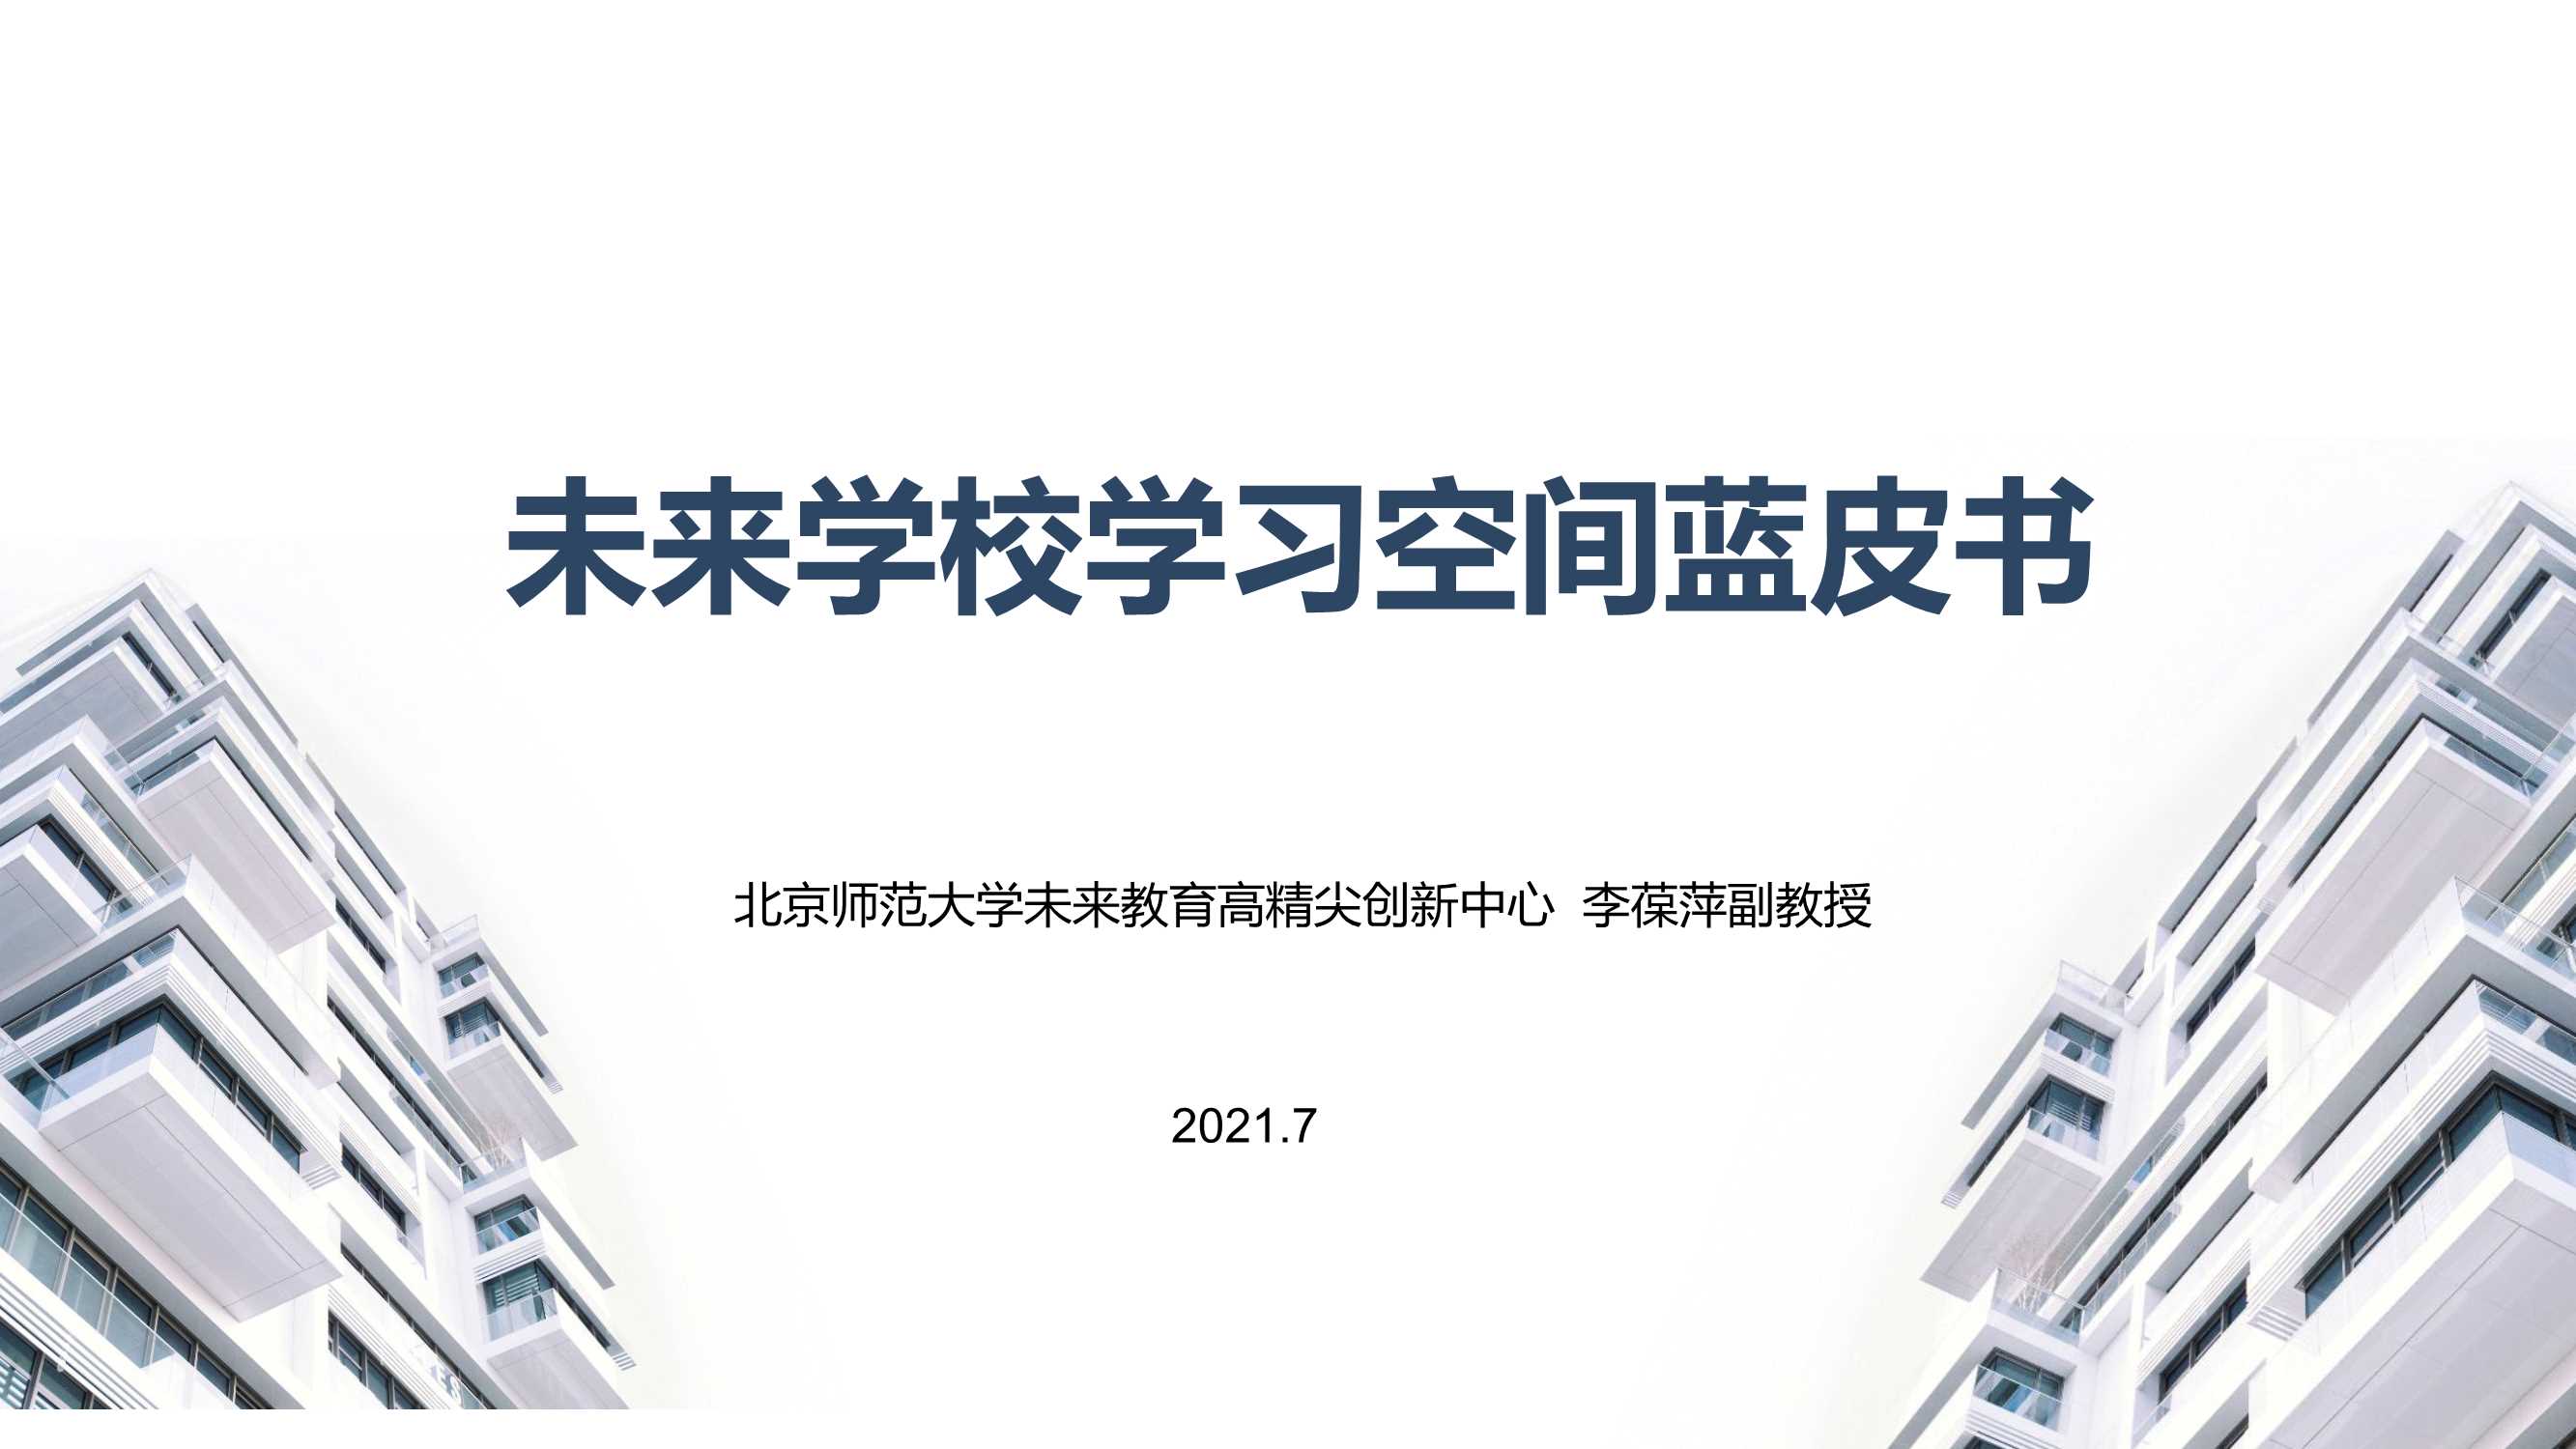 北京师范大学-未来学校学习空间蓝皮书-2021.07-103页